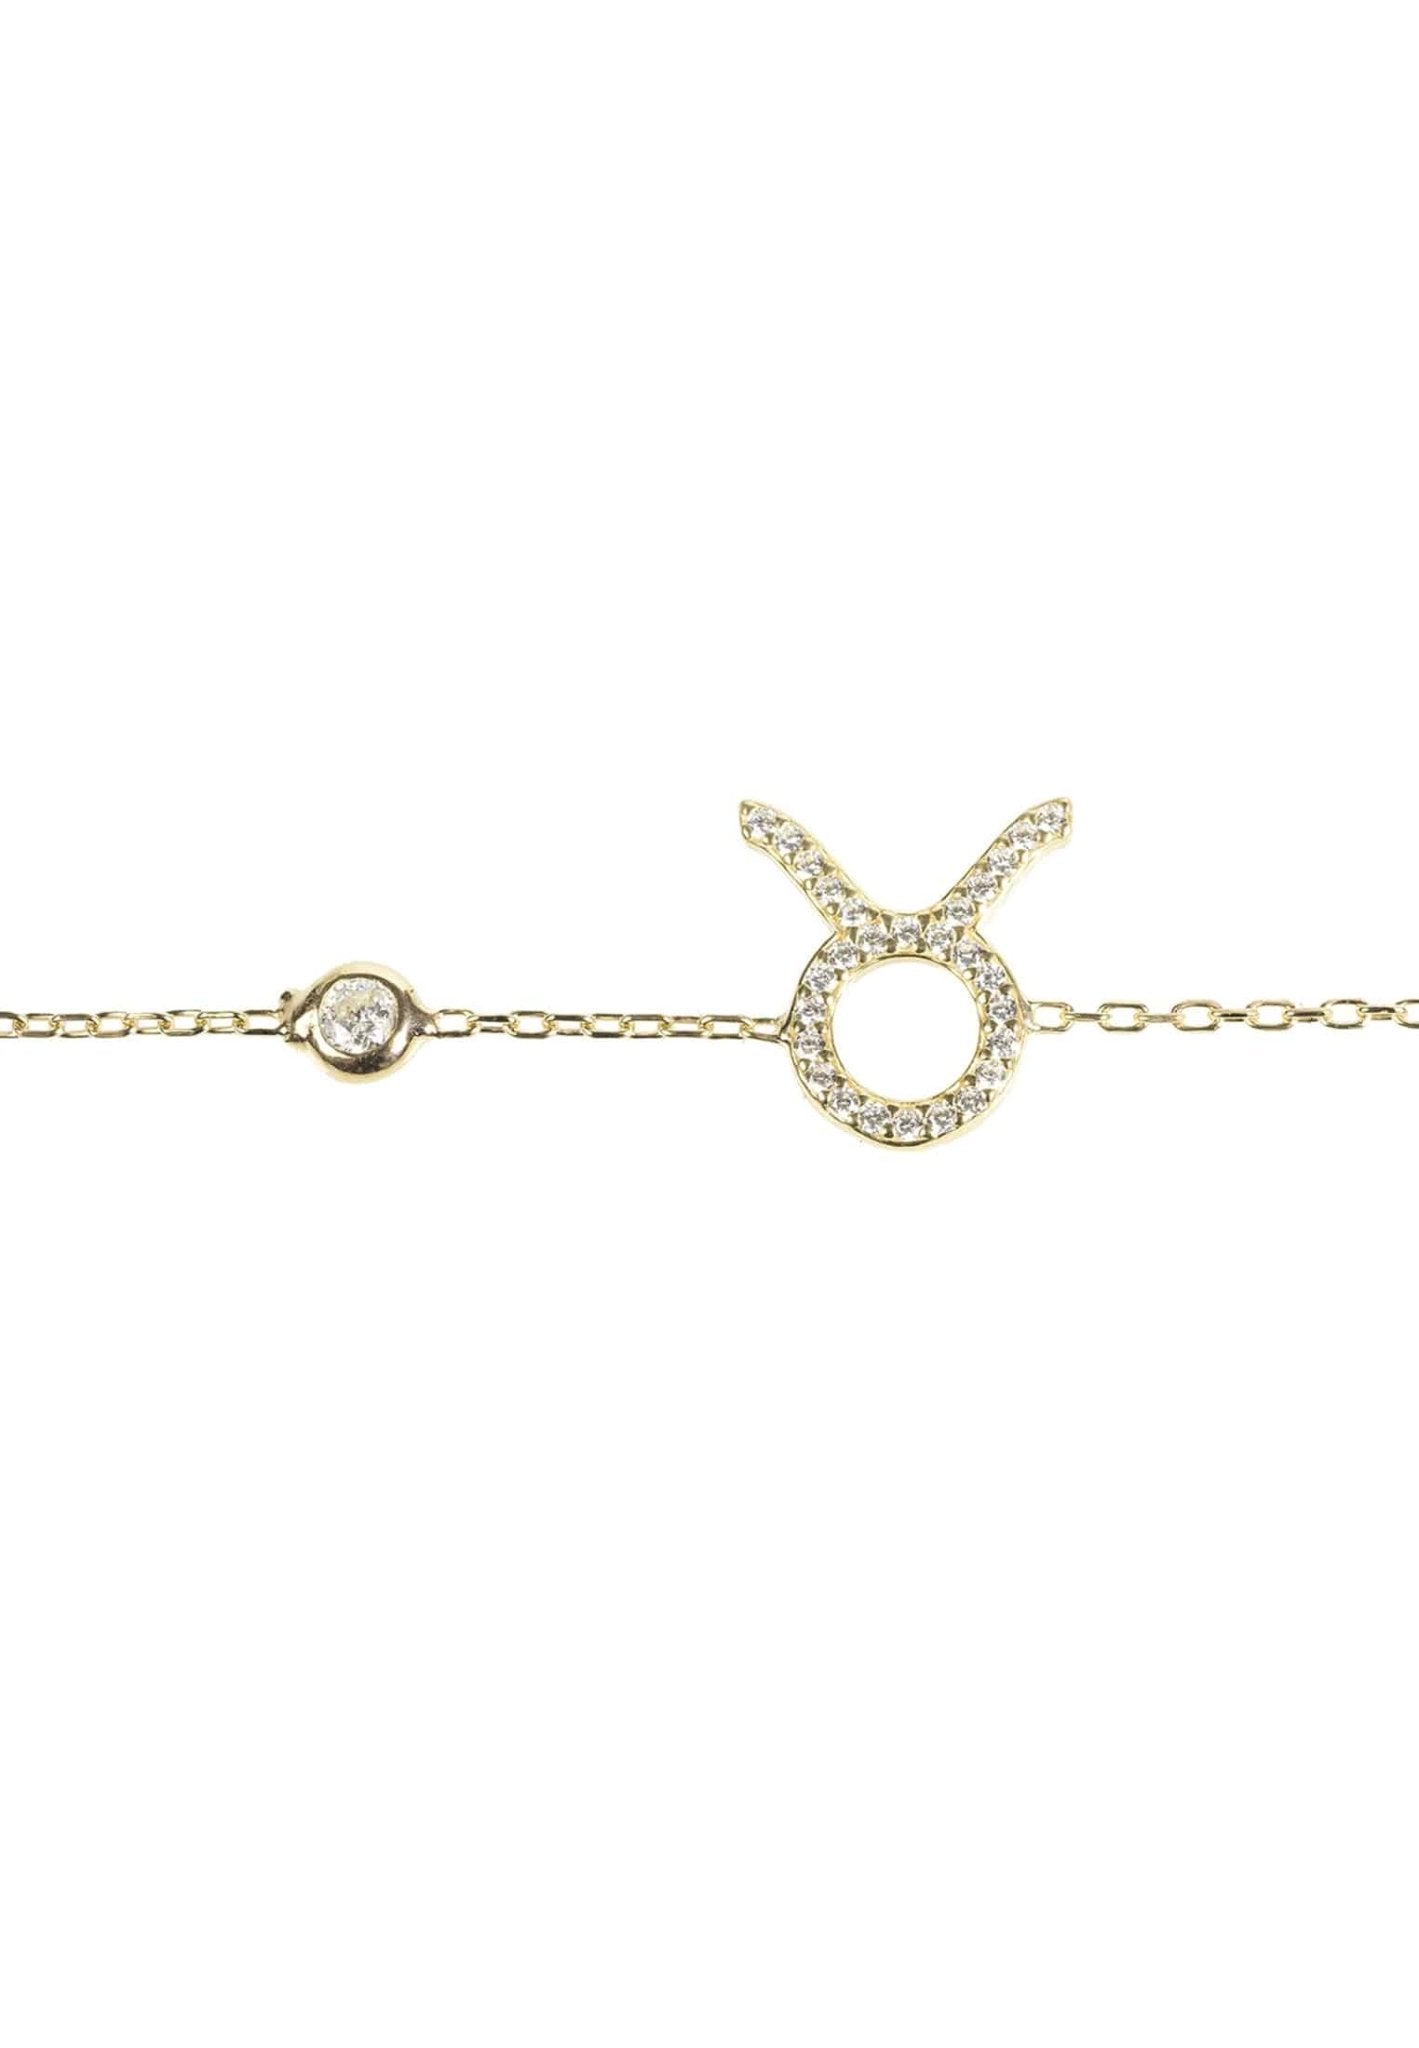 Personalized Bracelets - Zodiac Star Sign Bracelet Taurus 